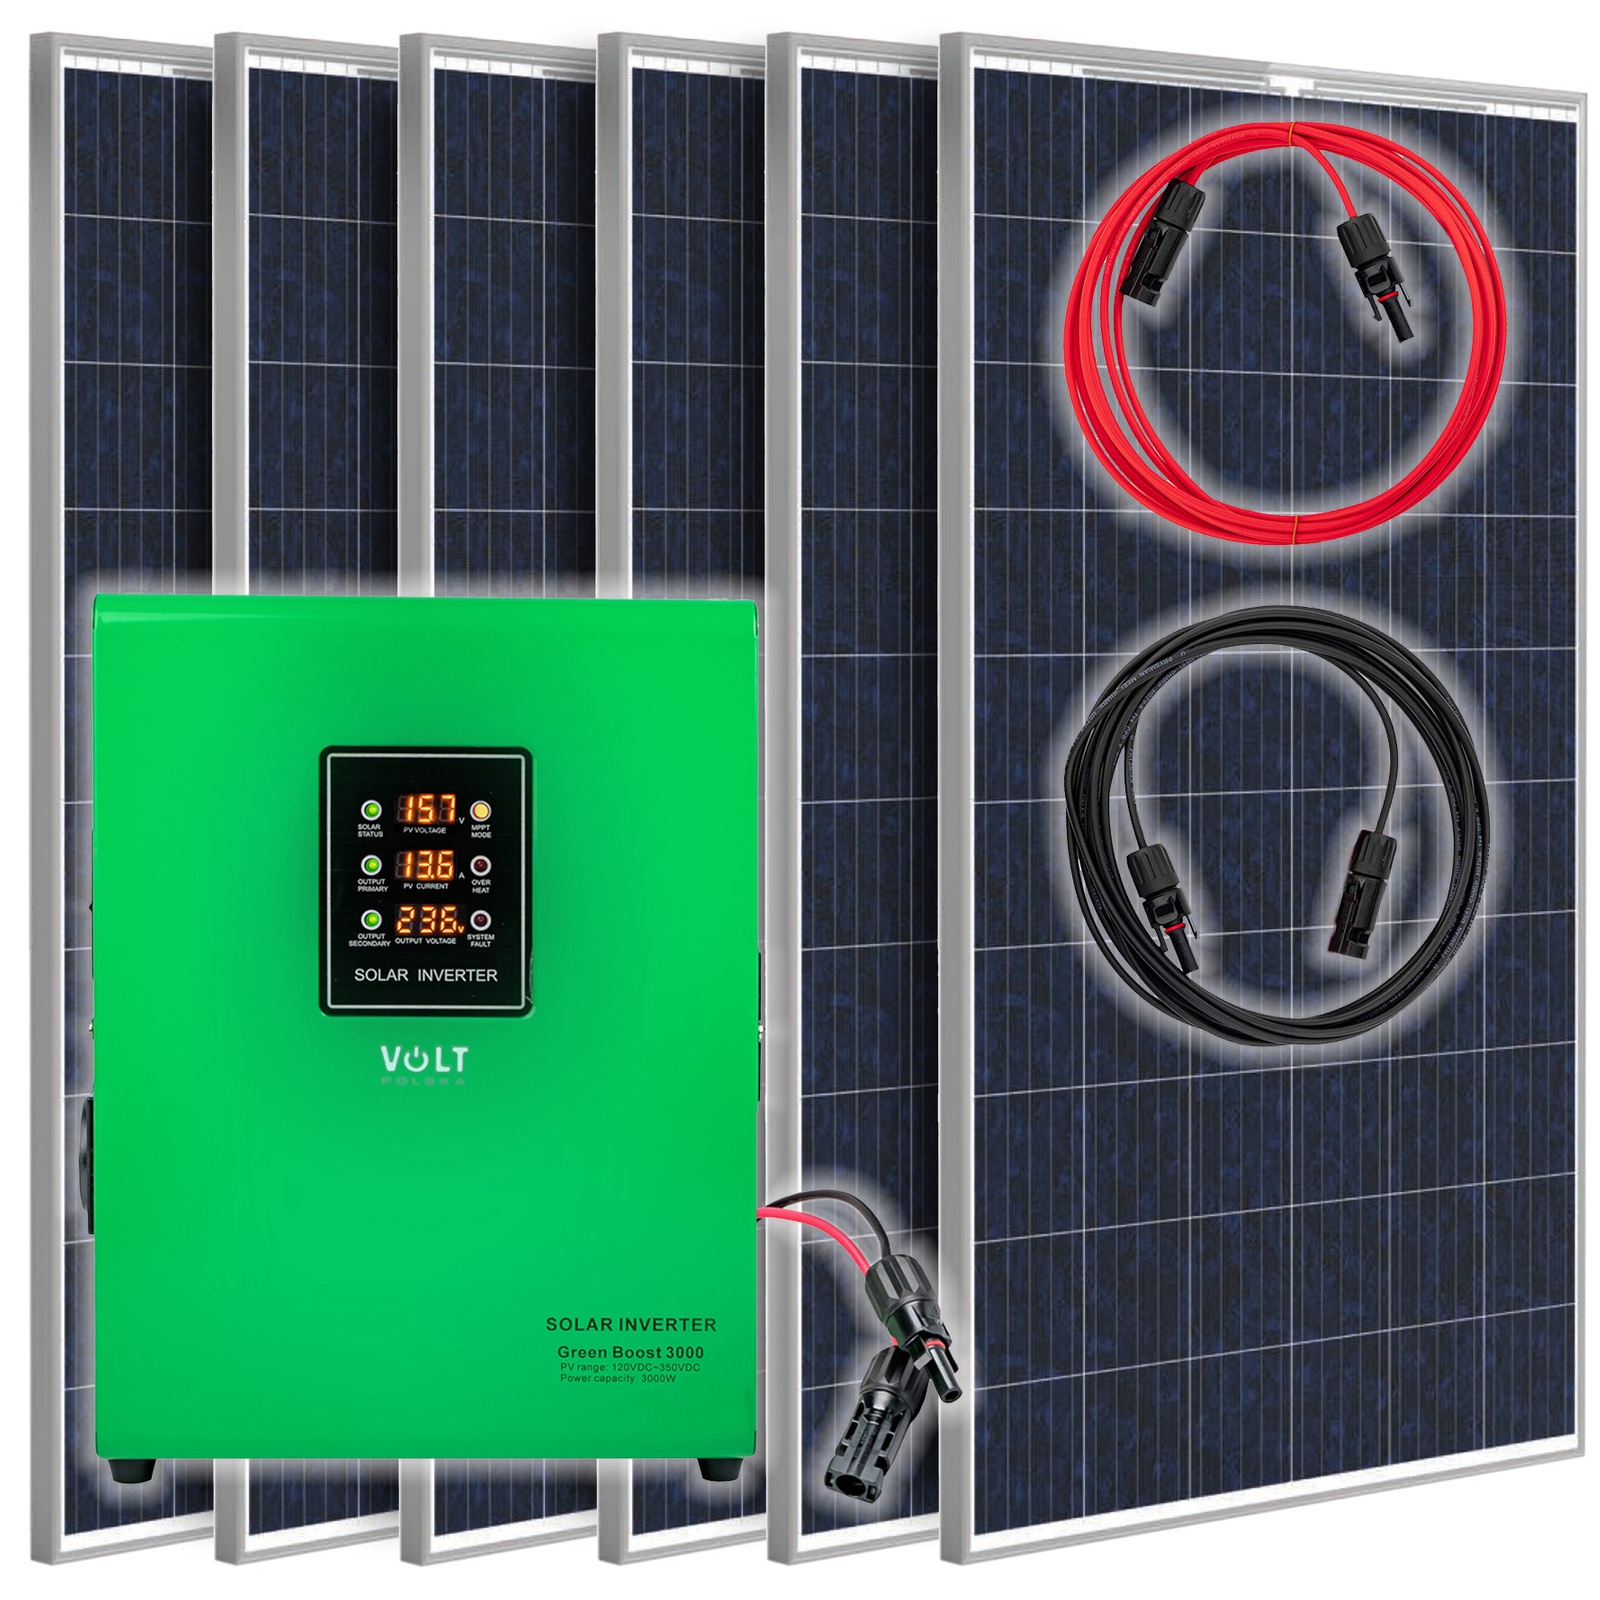 Image of Zestaw solarny fotowoltaiczny do grzania wody (Panel solarny, Przetwornica) VOLT POLSKA